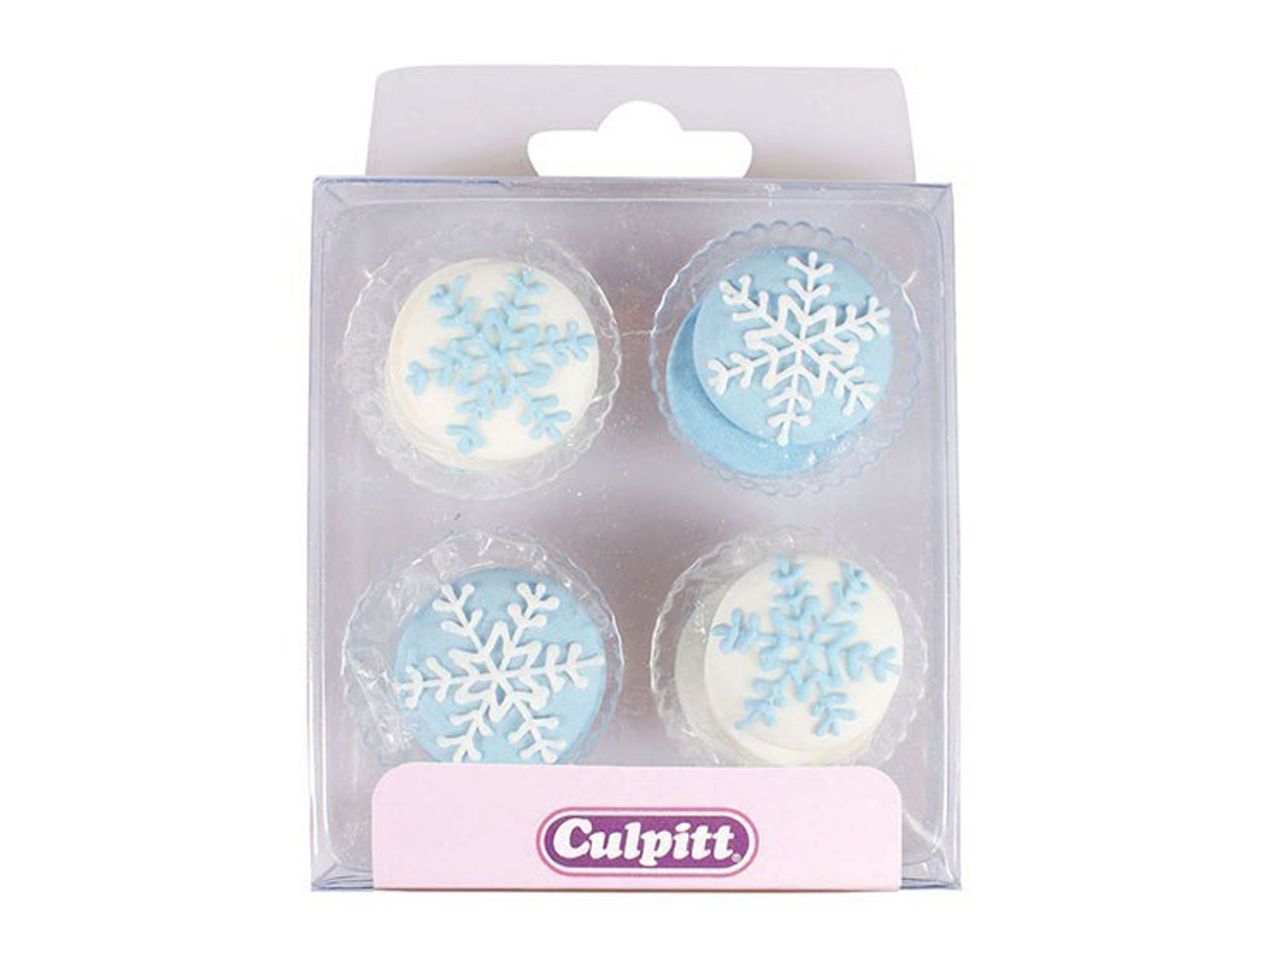 Culpitt: Zuckerdekor Eiskristalle & Schneeflocken, Hellblau & Weiß, 12 Stück à 25 mm